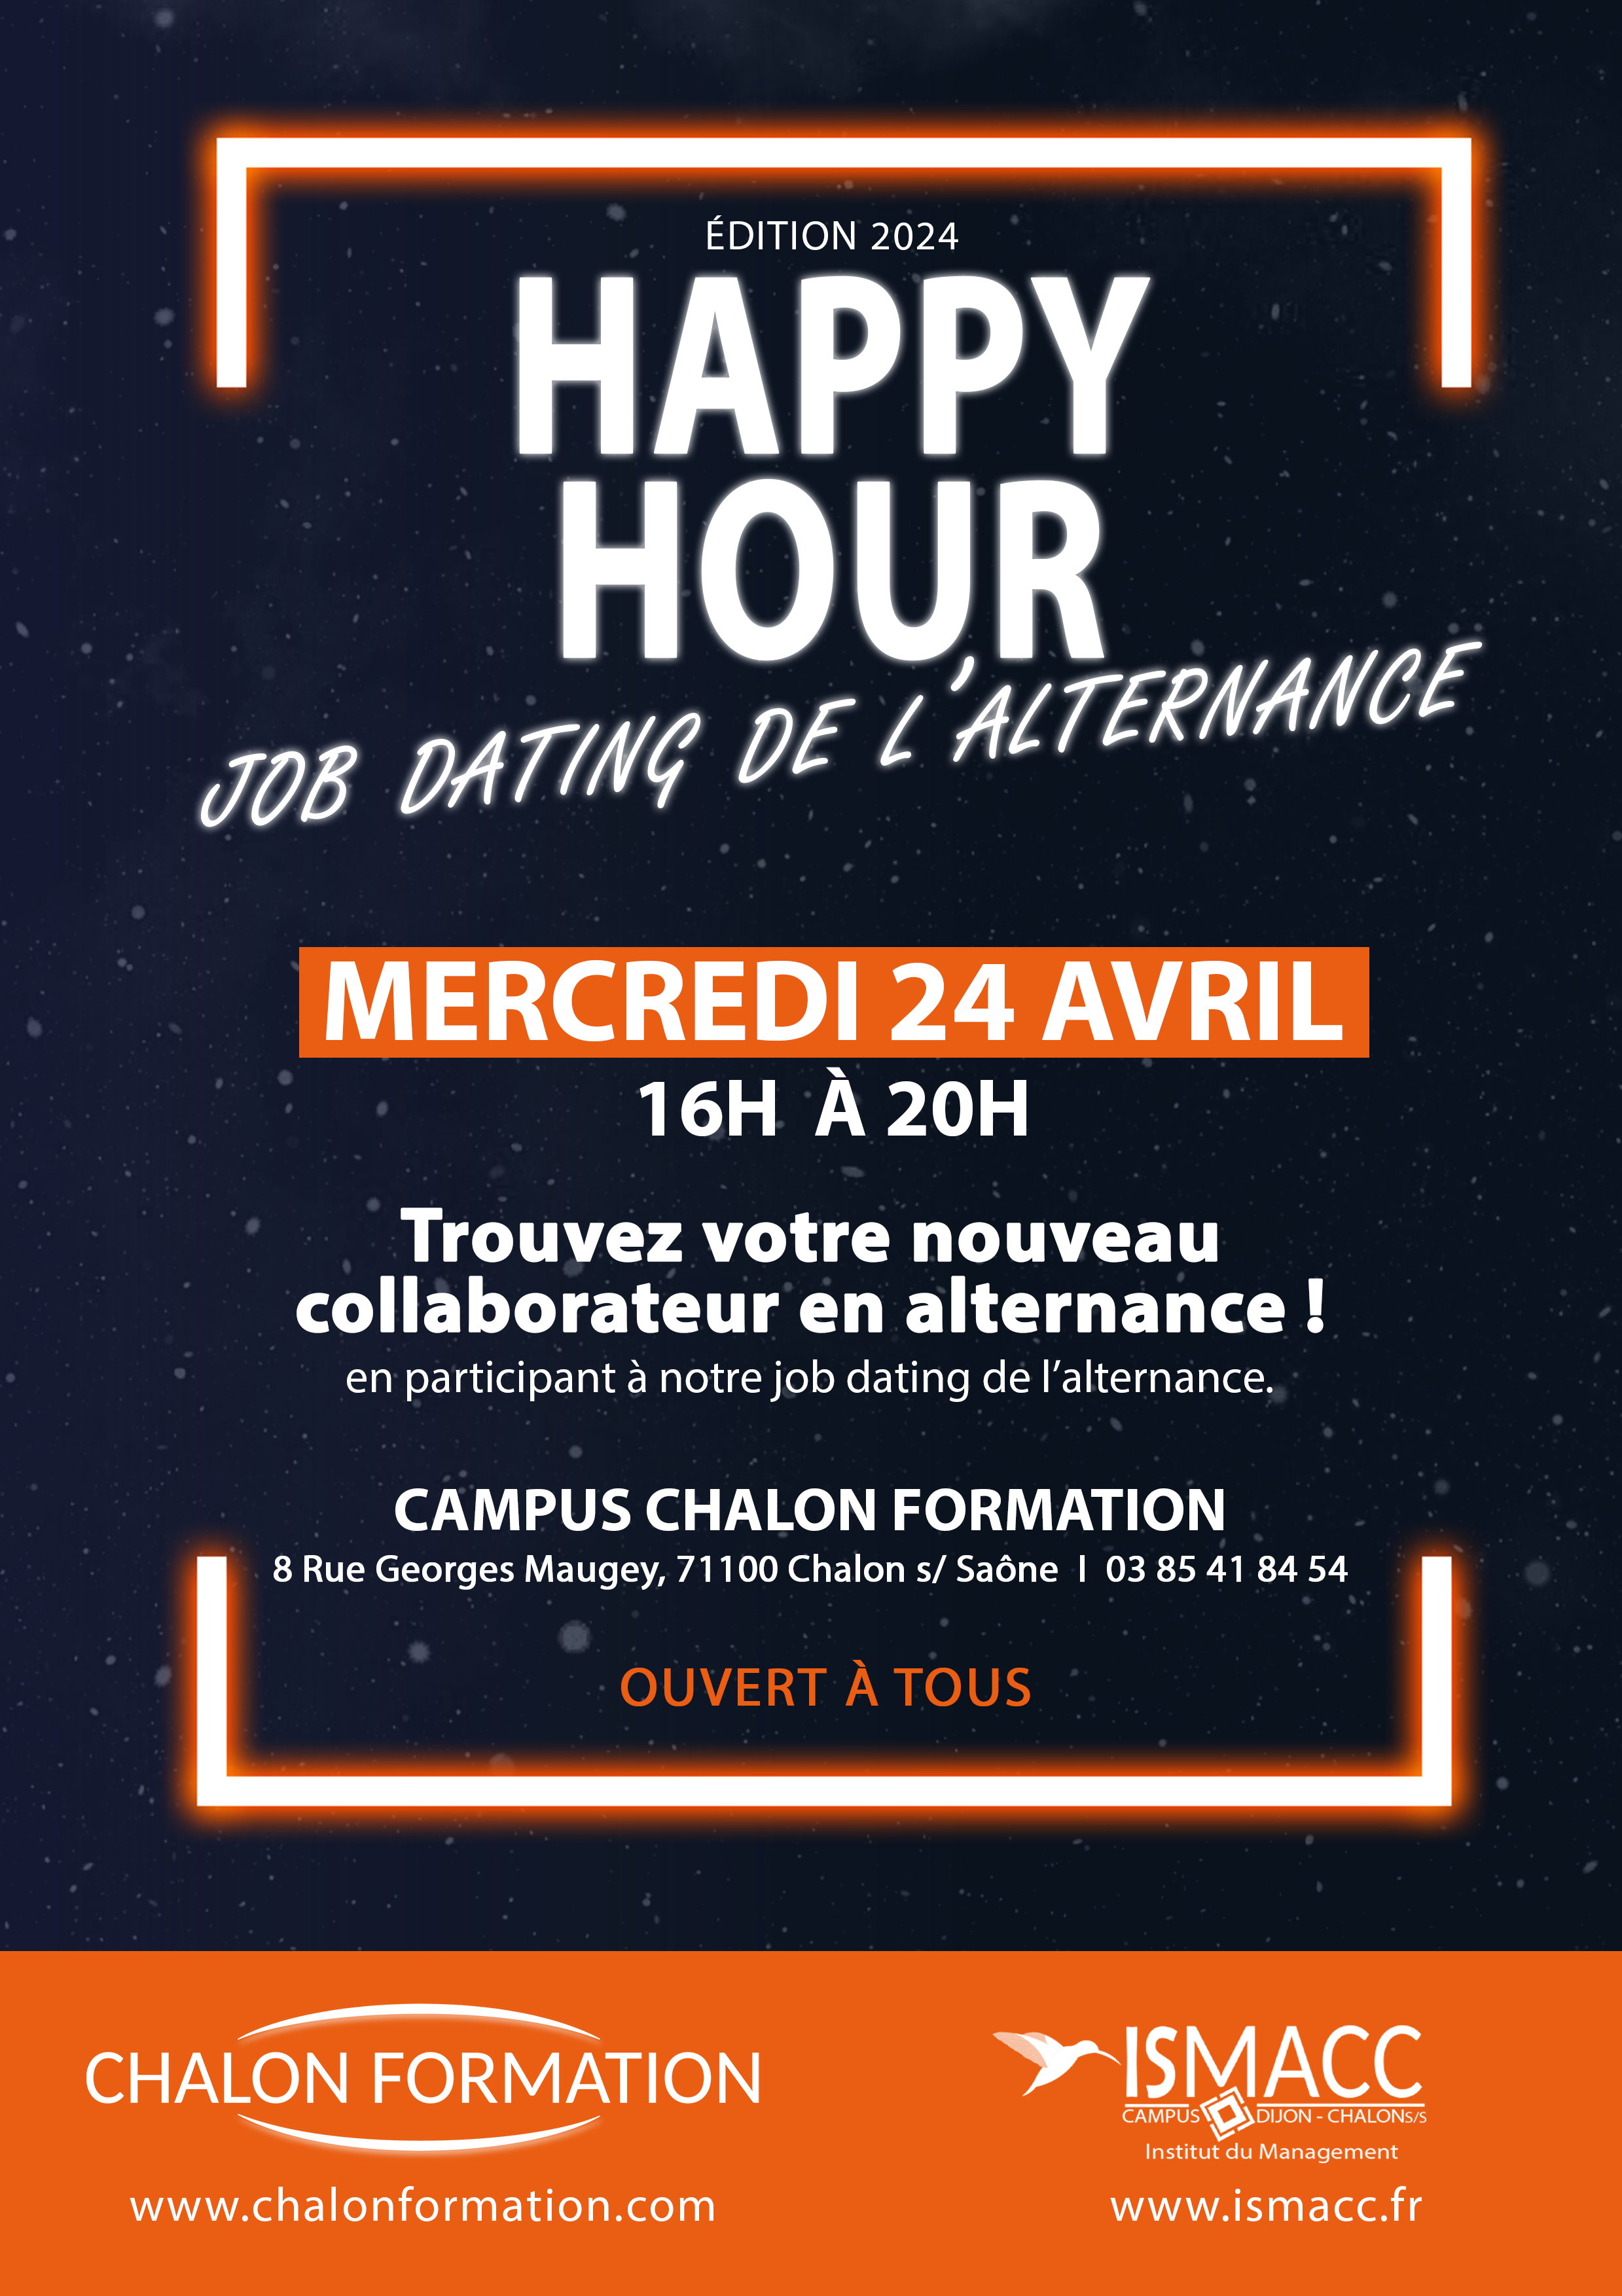 Happy Hour Job Dating de l'alternance à Chalon Formation prévu le mercredi 24 avril 2024